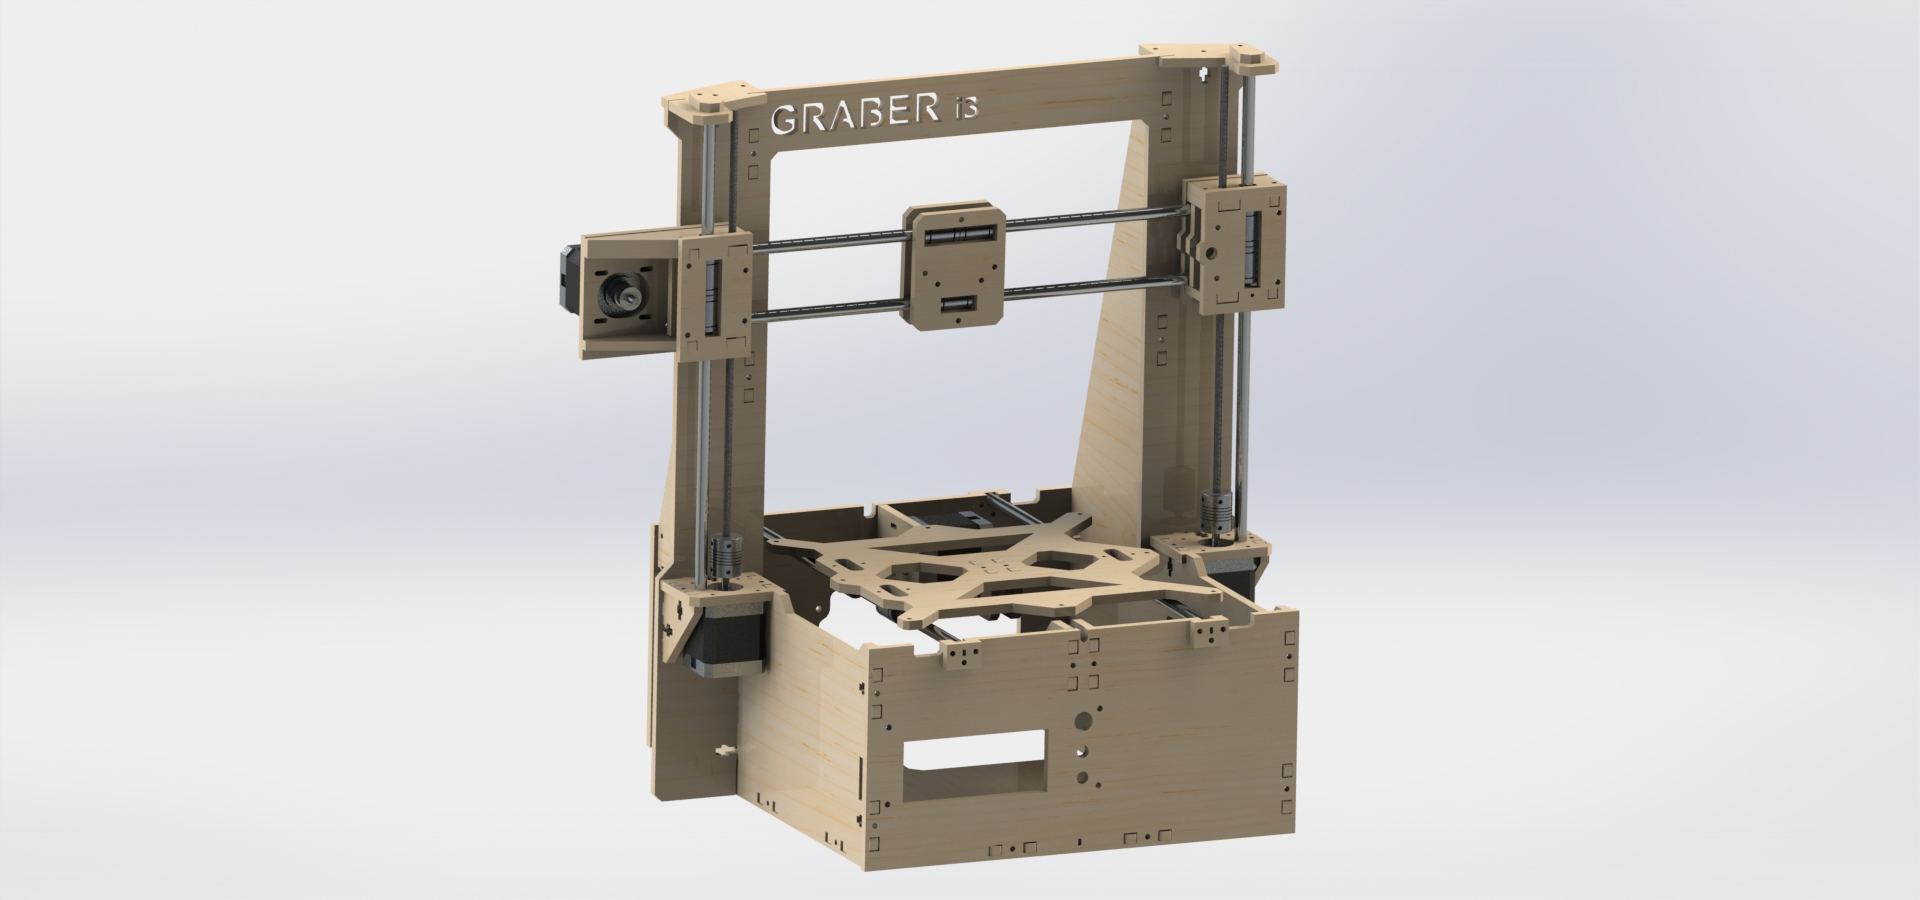 Graberi3ATX版本 3D打印机